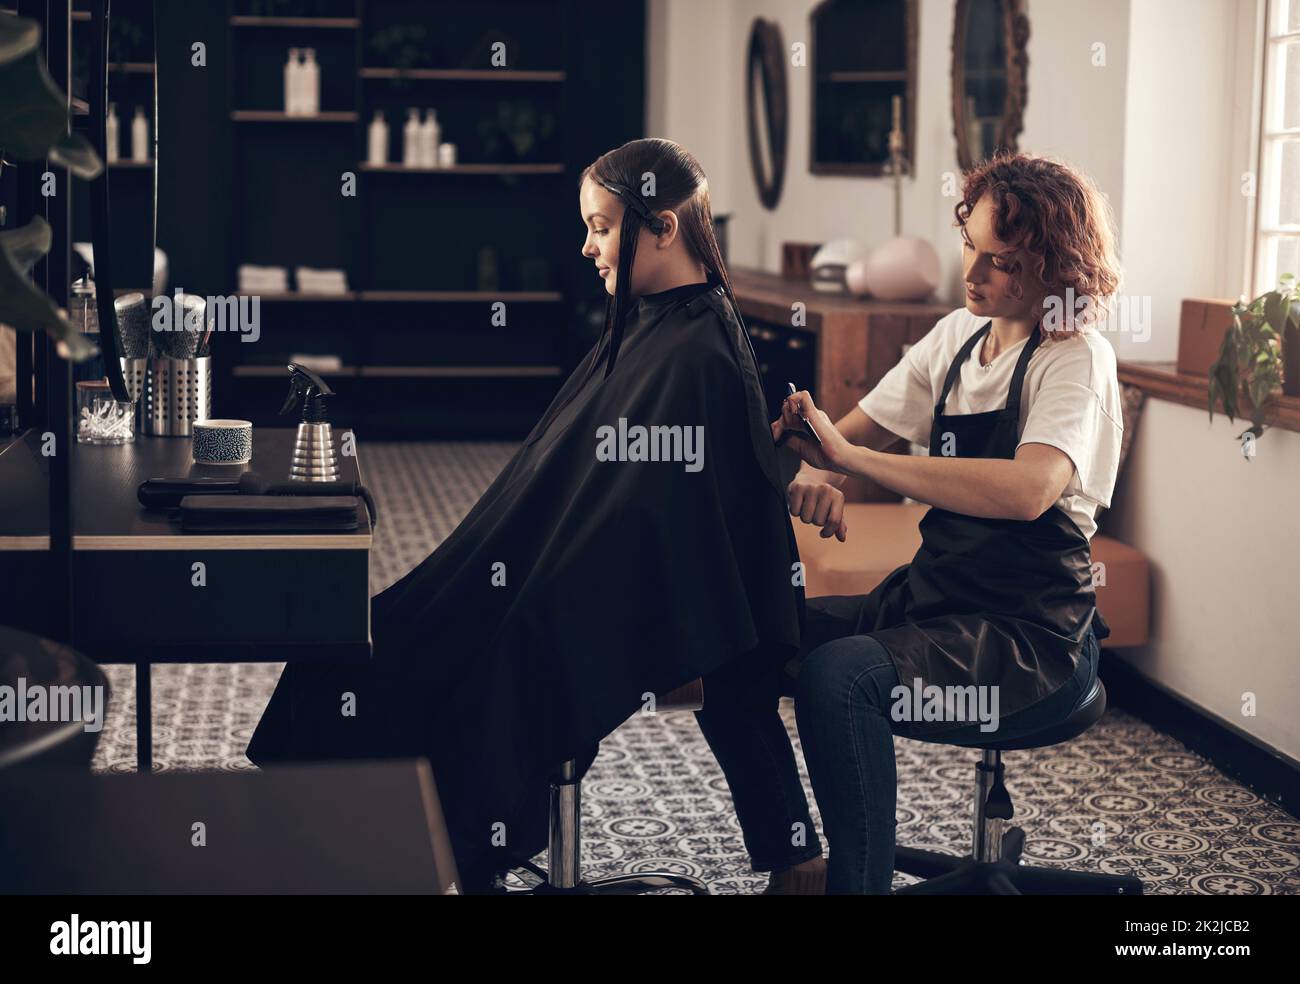 Elle fait toujours un bon travail avec mes cheveux. Photo d'un coiffeur coupant les cheveux d'un client dans un salon. Banque D'Images